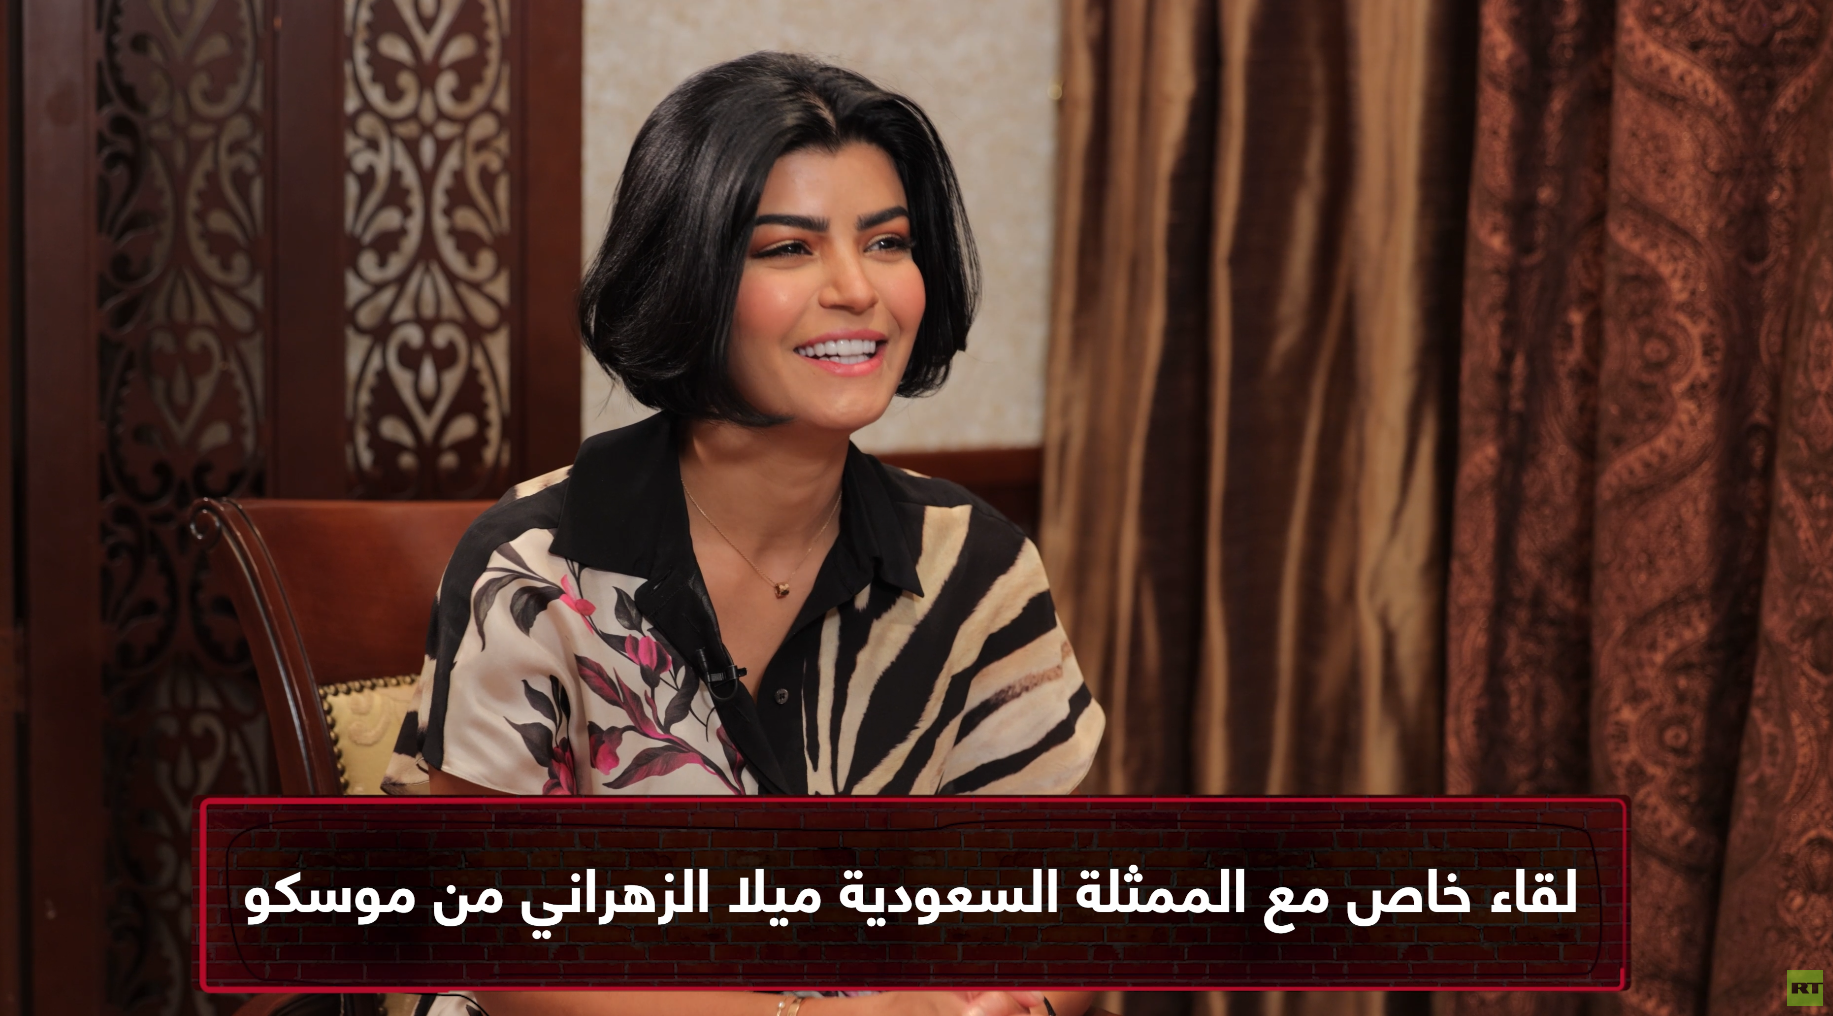 الممثلة السعودية ميلا الزهراني: دخلت مجال التمثيل صدفة ولدي طفلة عمرها 12 عاما